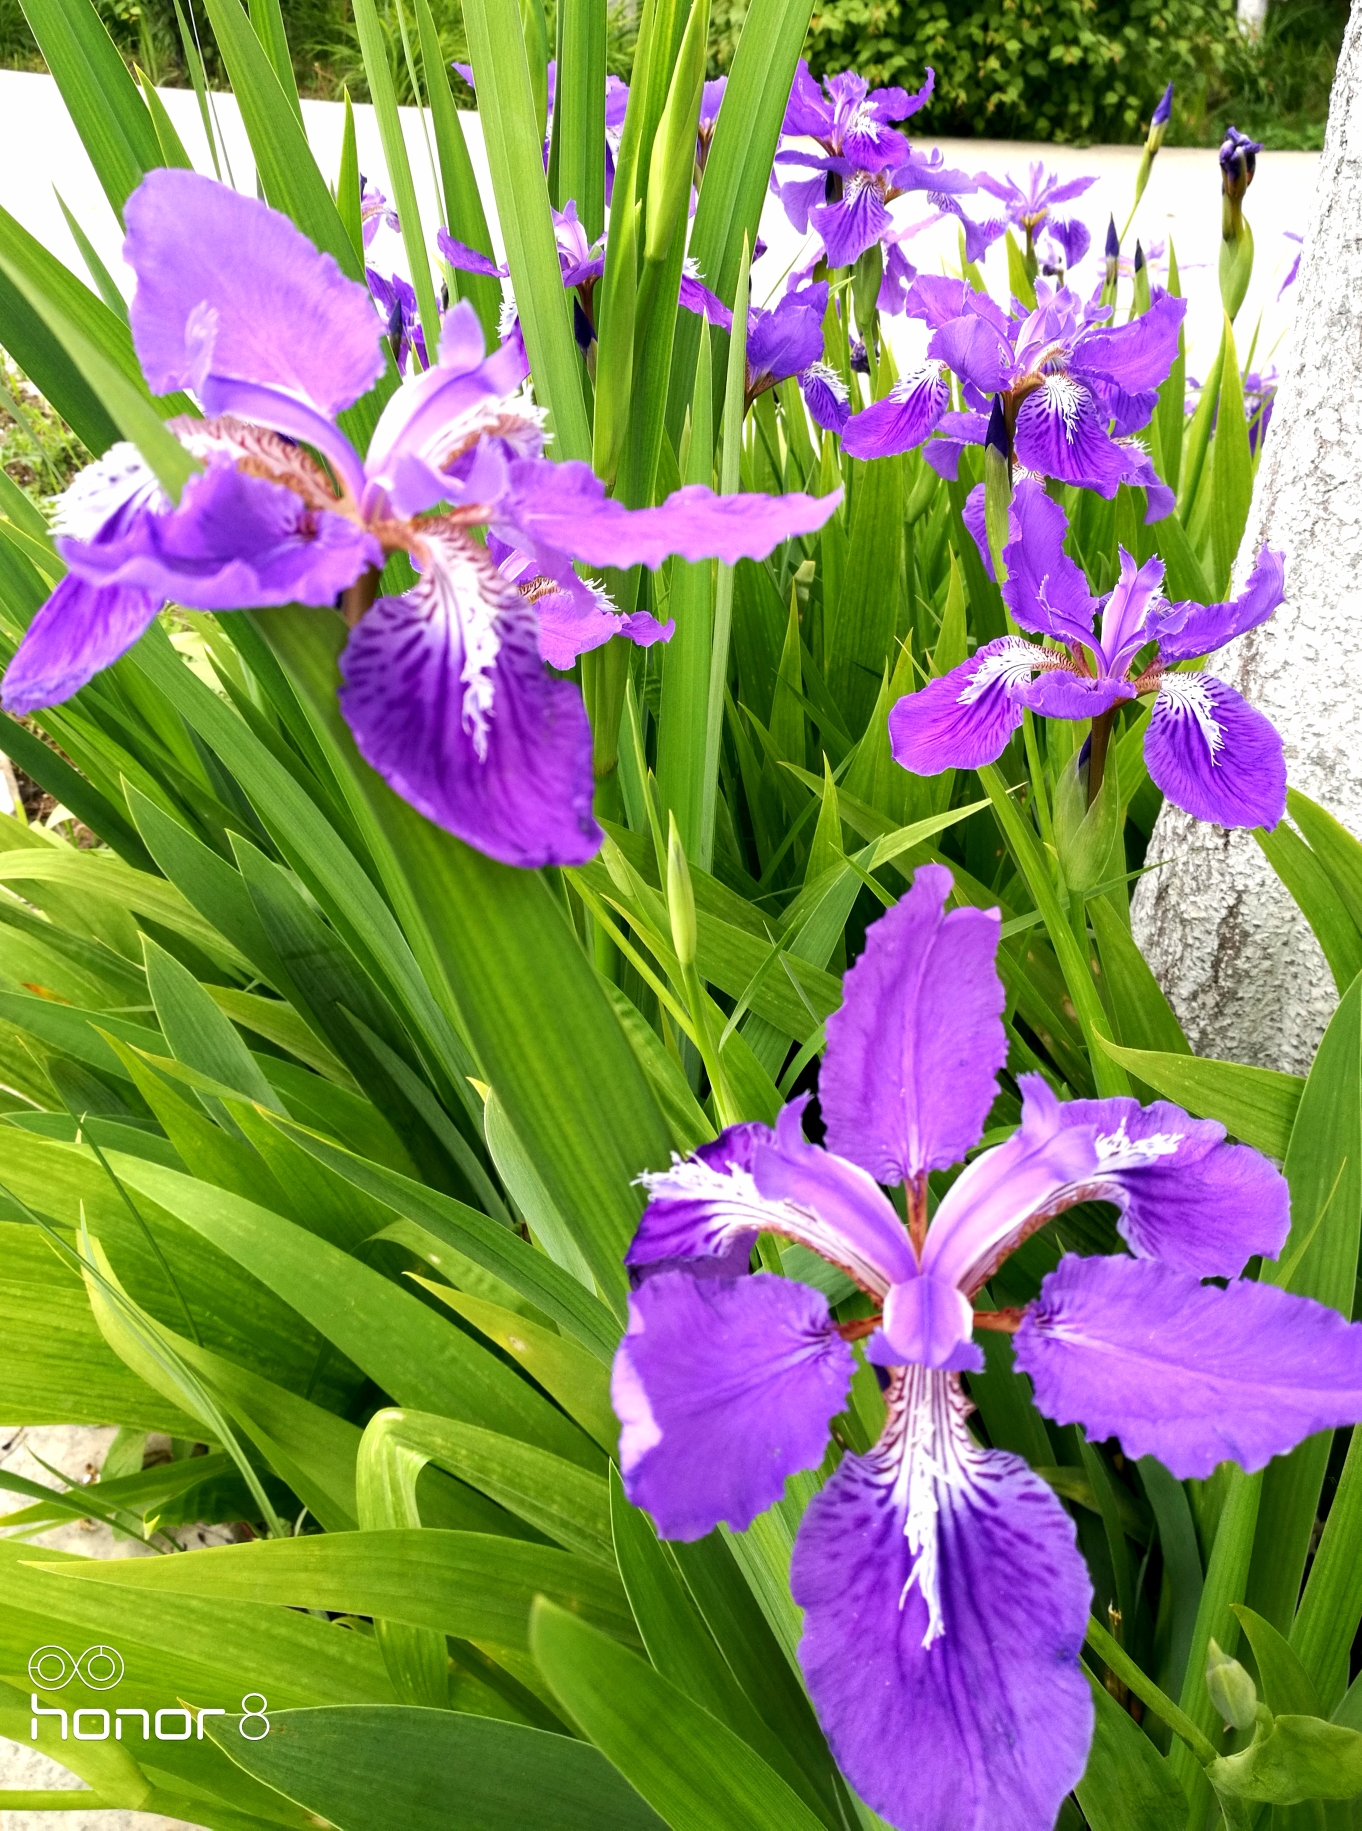 紫鸢尾花的花语是——爱意,吉祥与信仰者的幸福而优美,爱